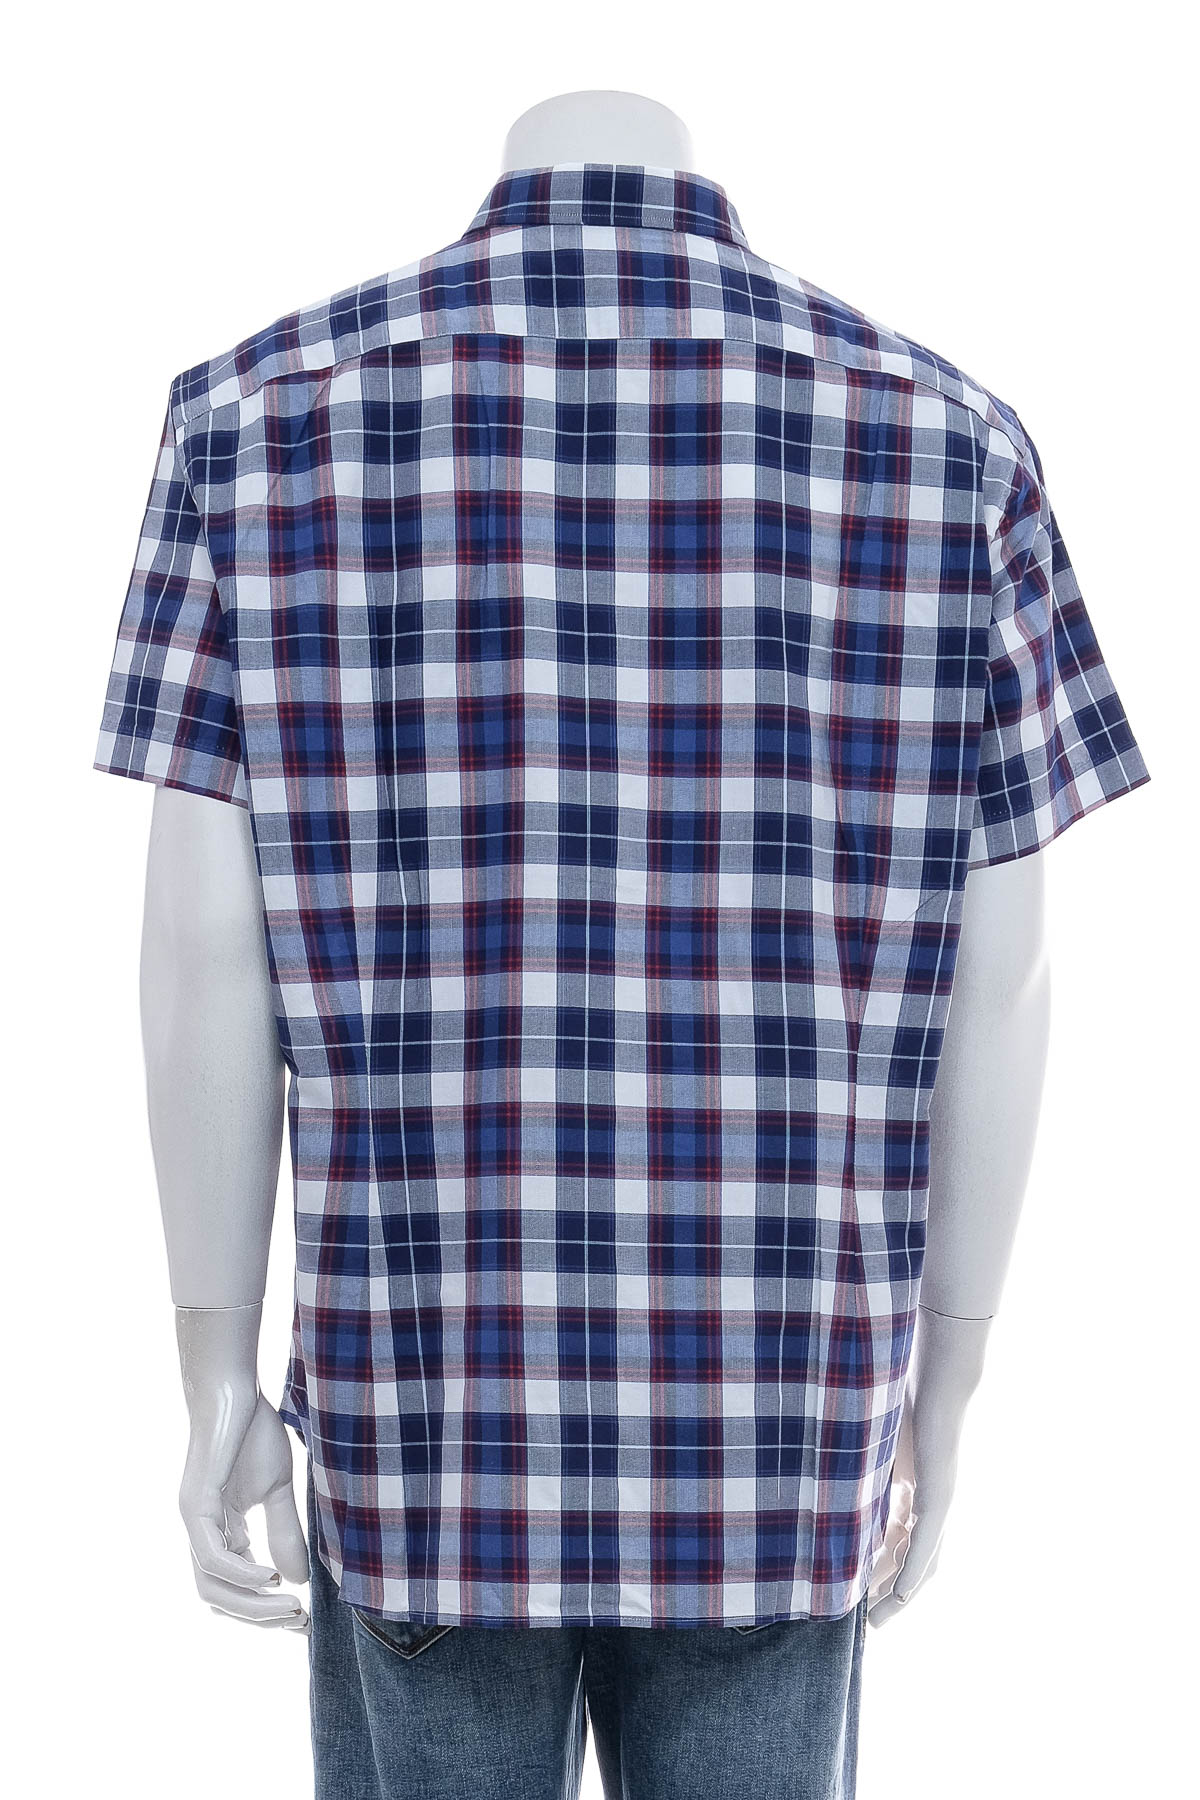 Ανδρικό πουκάμισο - Van Laack - 1